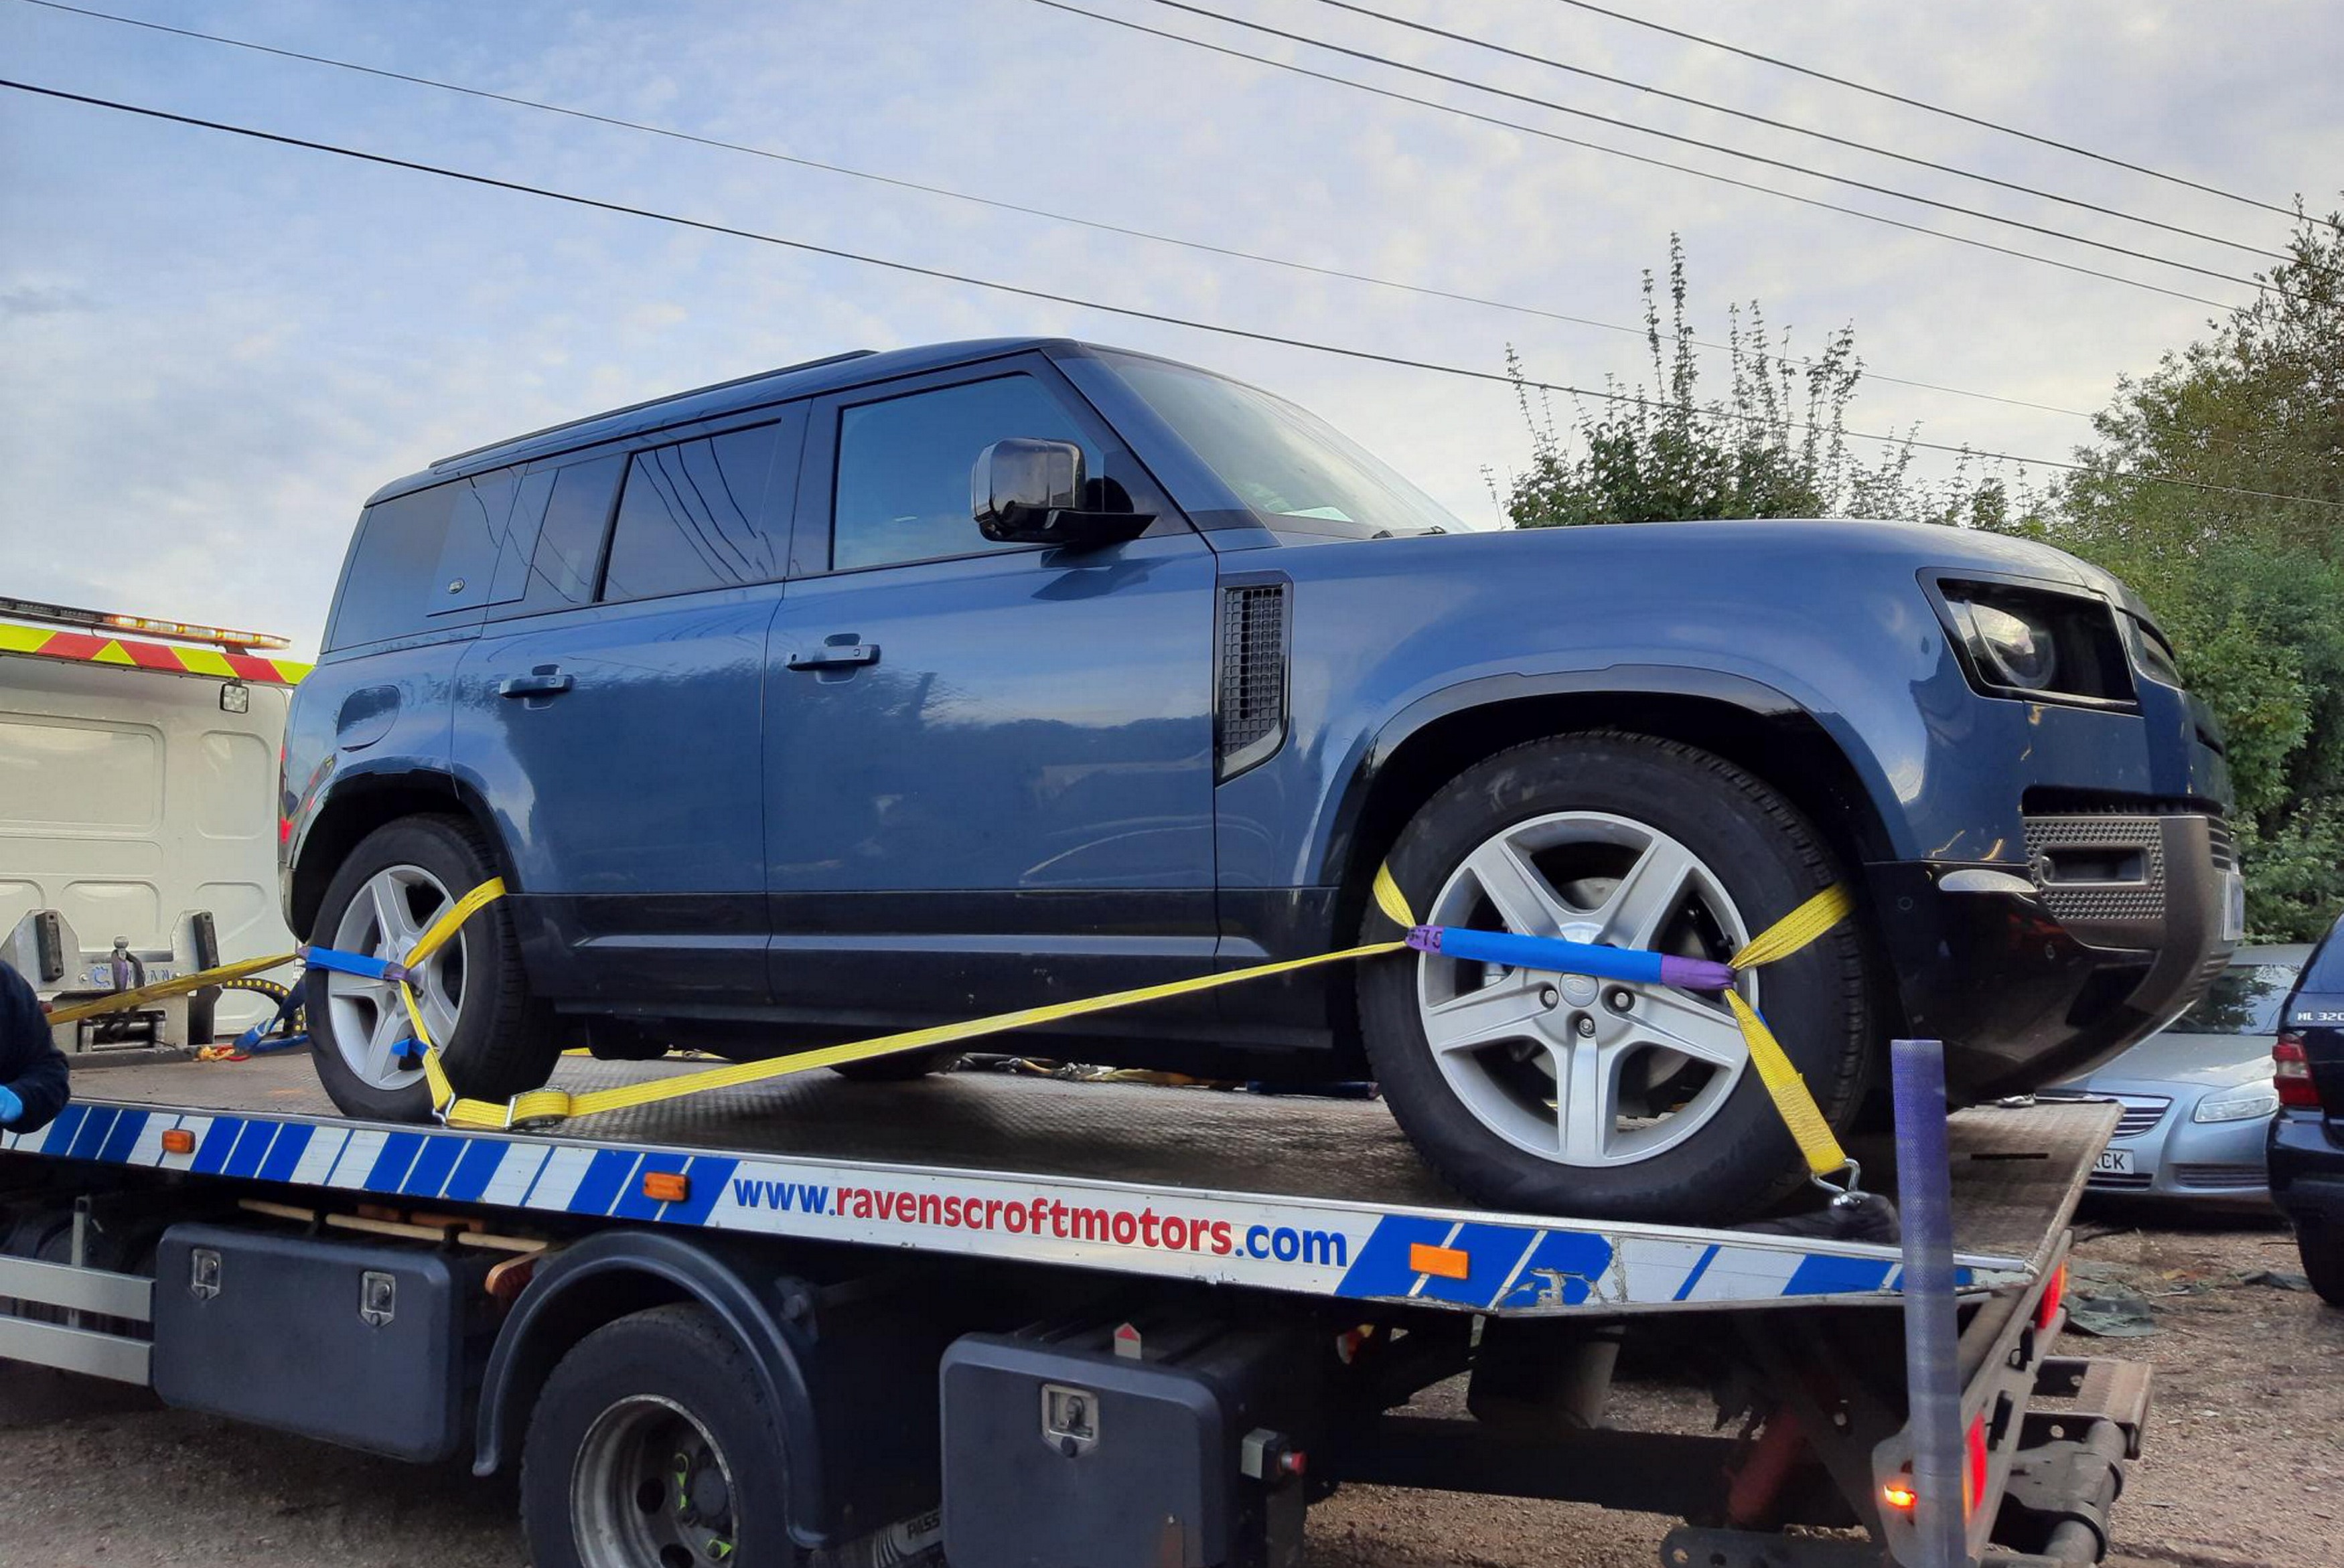 Der blaue Land Rover Defender im Wert von rund 55.000 £